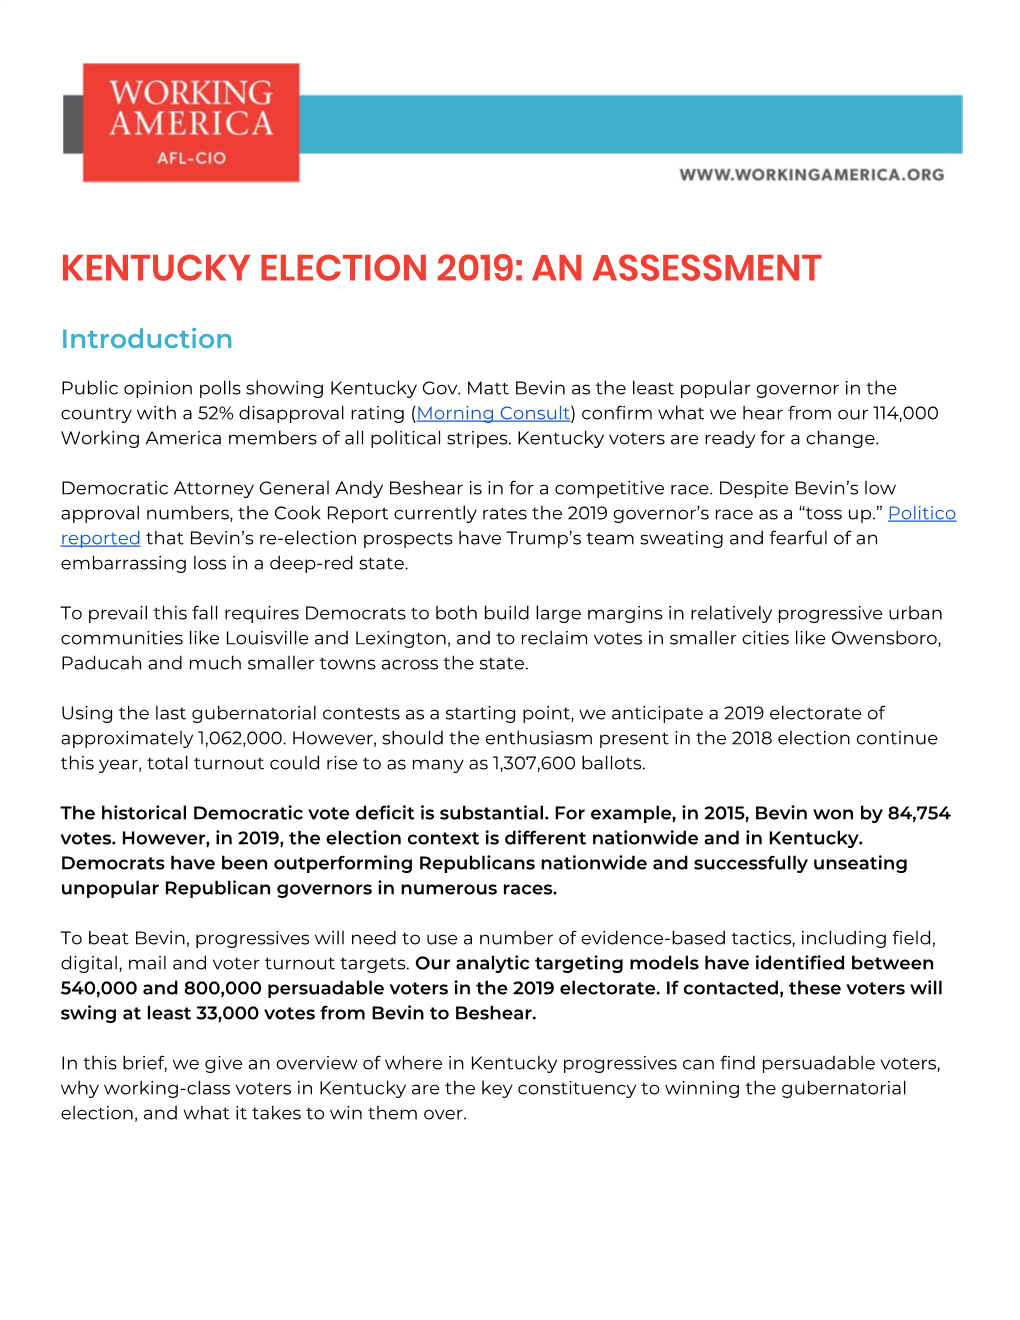 Kentucky Election 2019: an Assessment